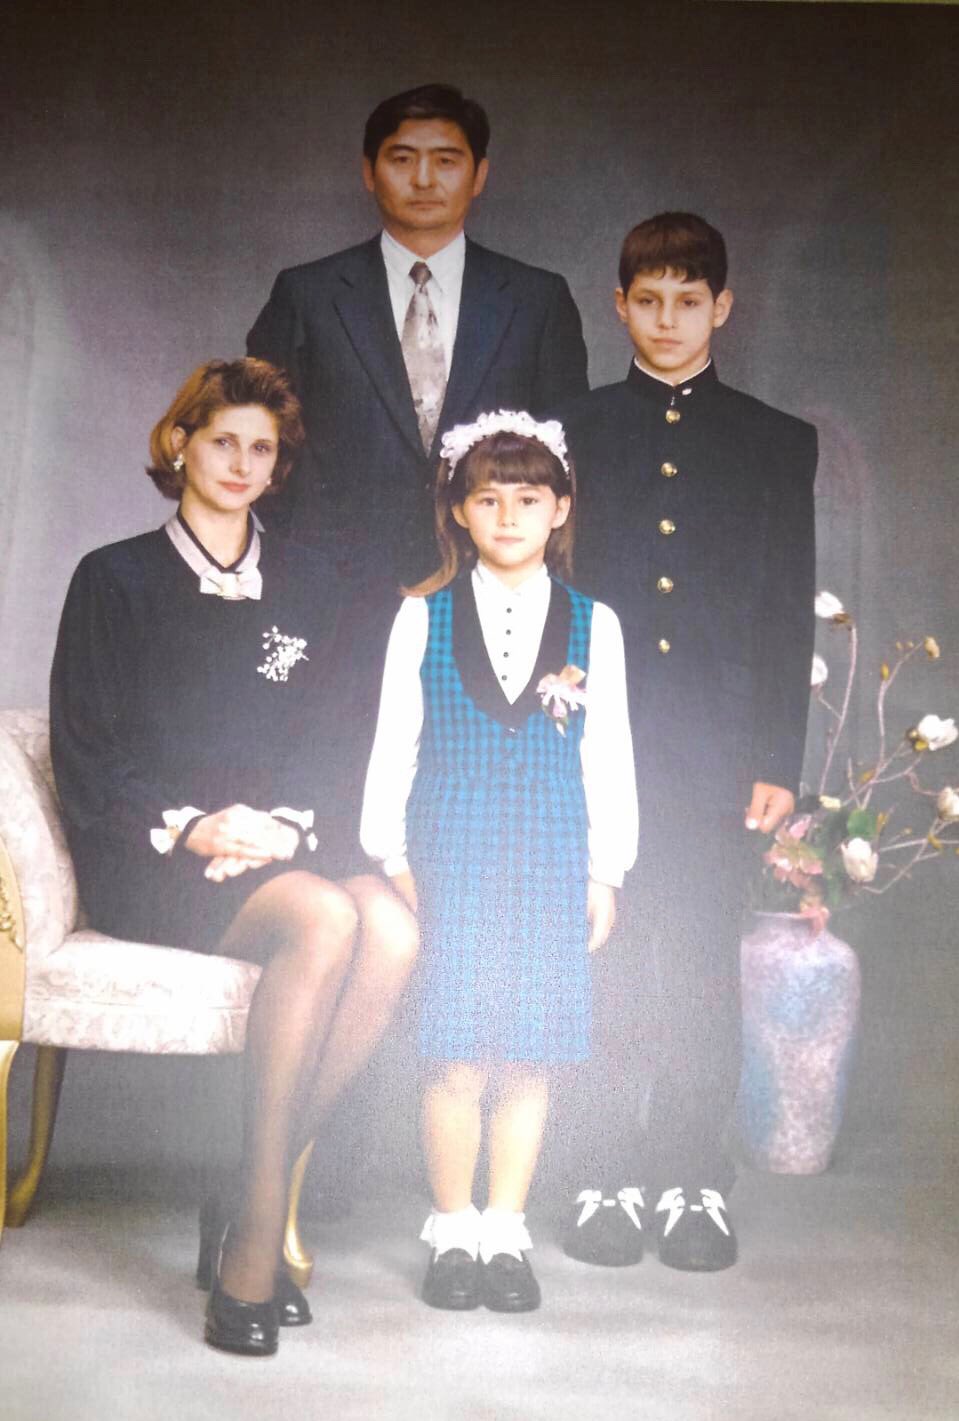 ダレノガレ明美 昔の写真集めていたら 両親と兄との お母さんとお父さん 若い T Co C4enau6fvw Twitter